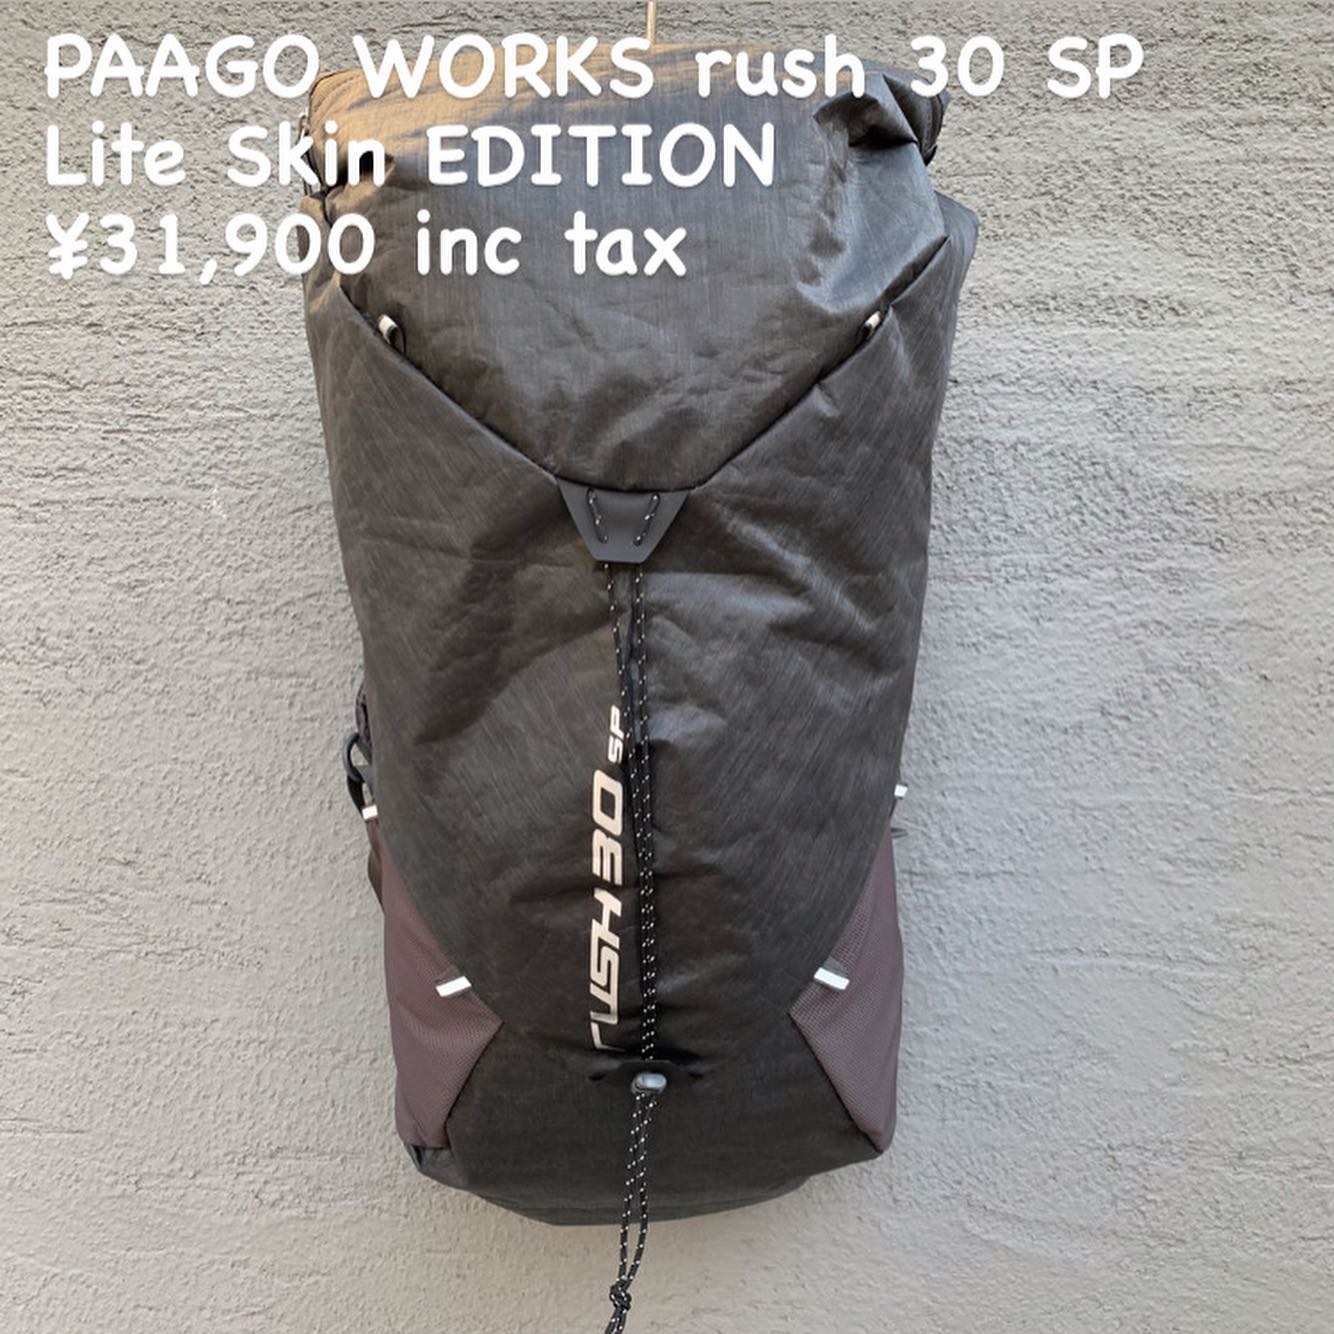 ください PAAGO WORKS rush 30spパーゴワークス crTNX-m85520416917 モデル